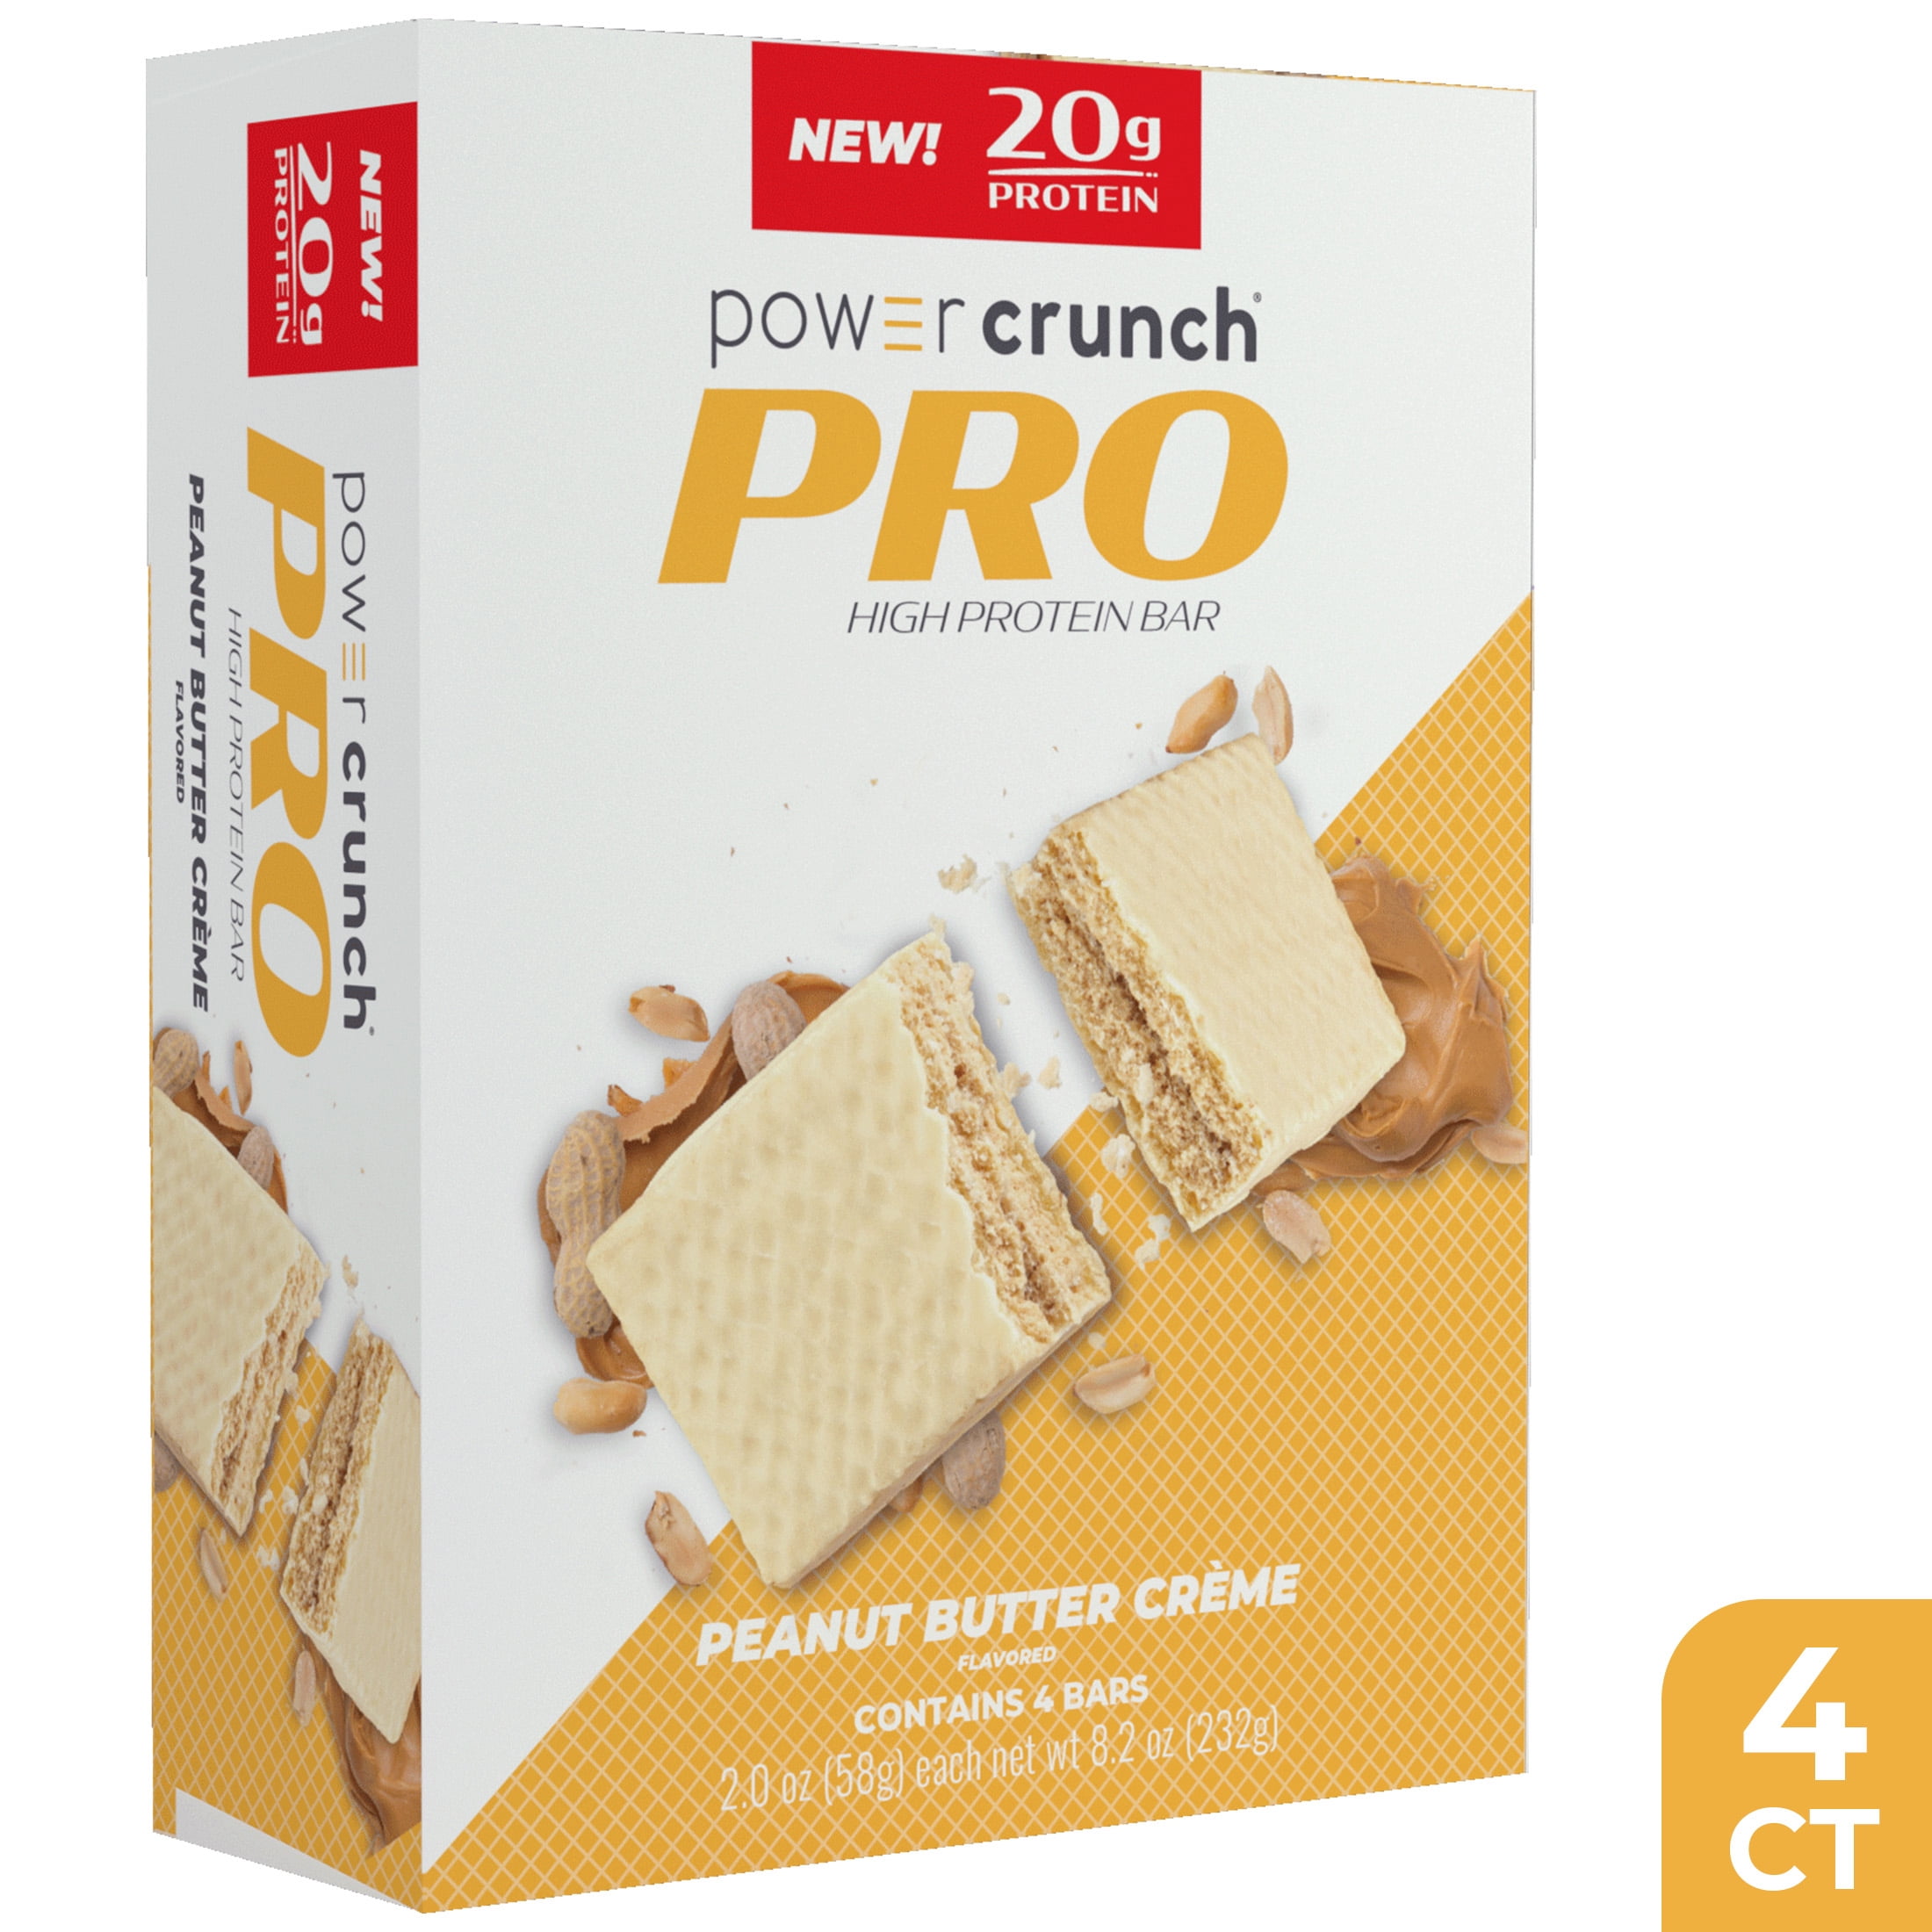 Power Crunch PRO Peanut Butter Cream High Protein Bar, 20g Protein, 2 oz, 4 Ct